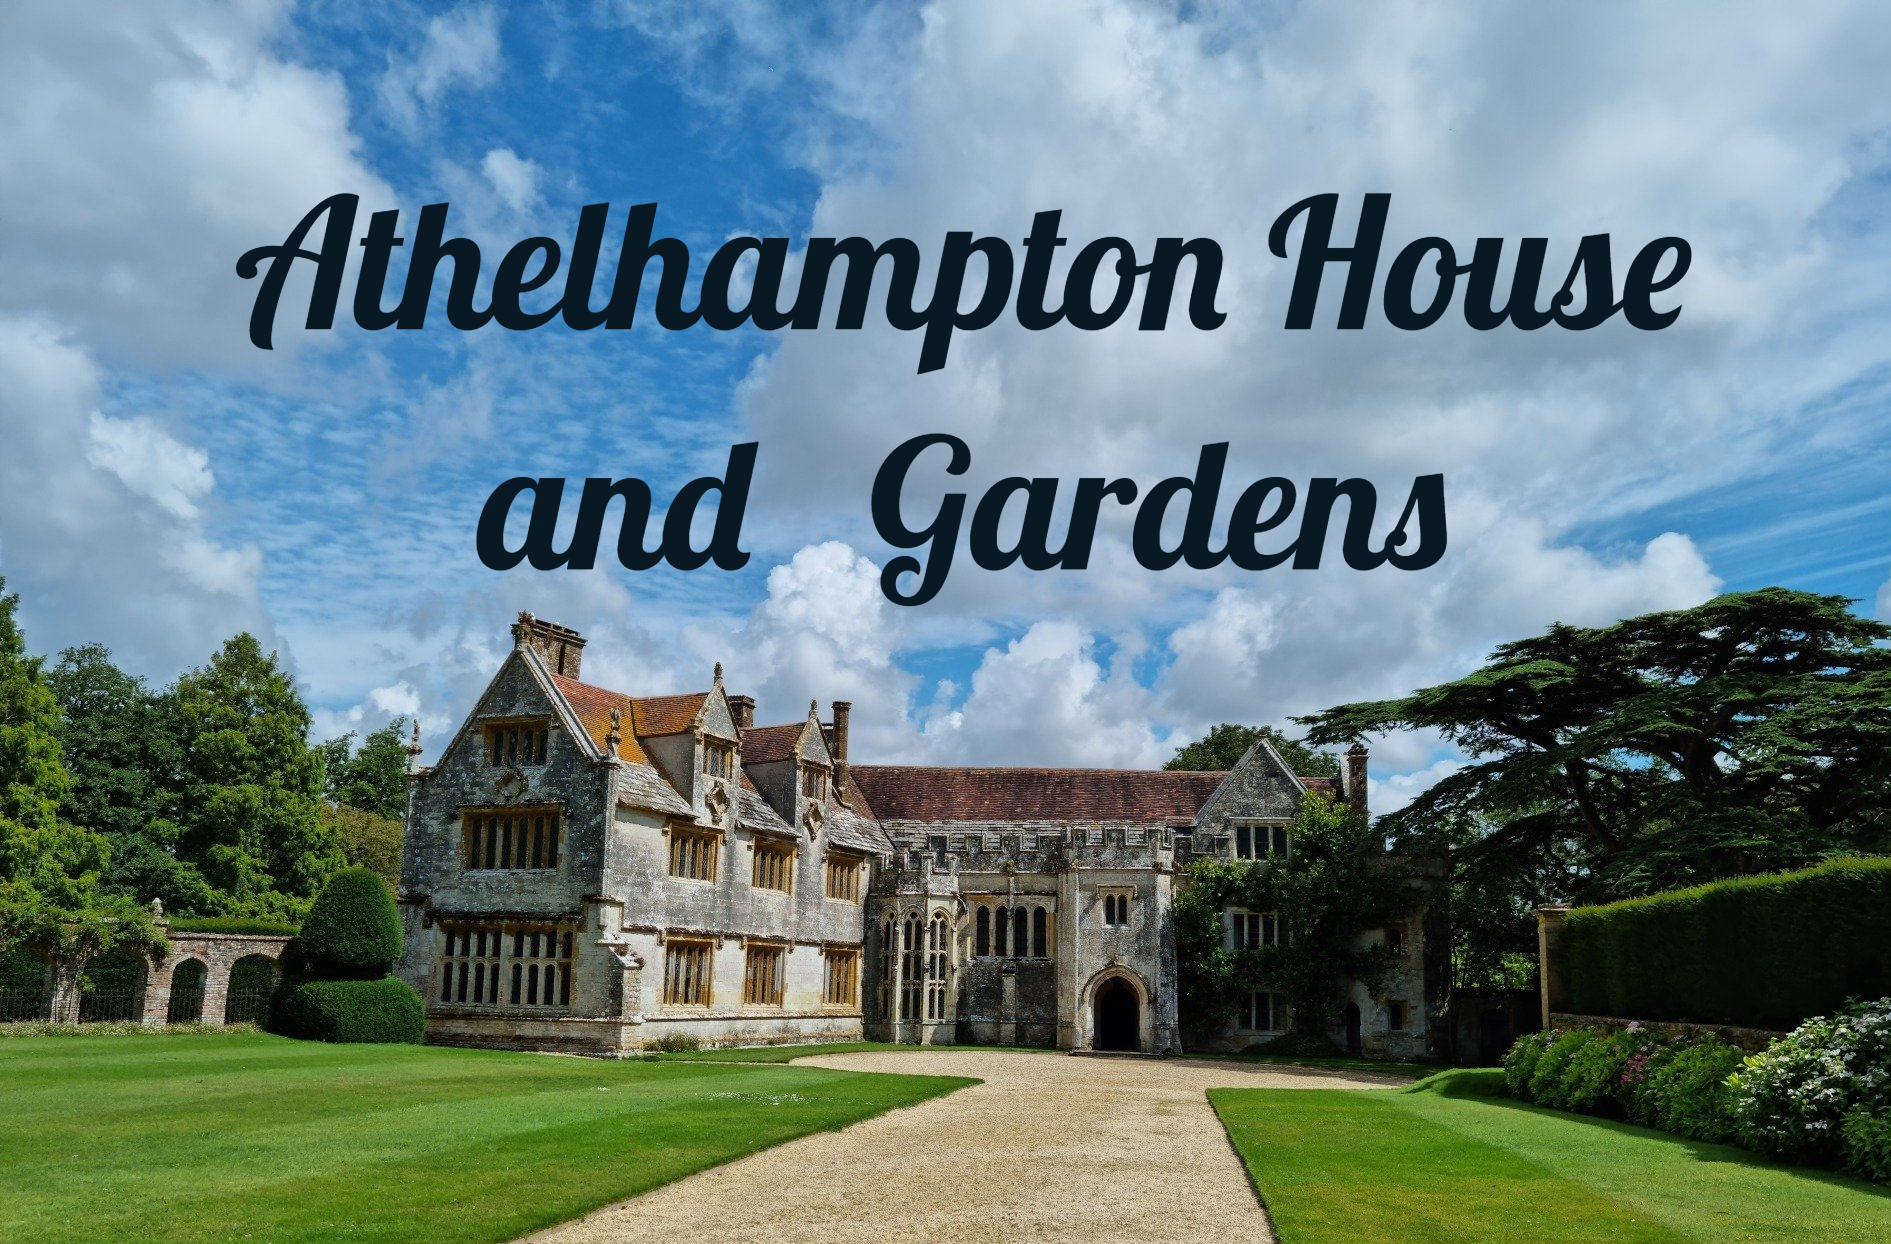 Athelhampton House and gardens in Dorchester Dorset